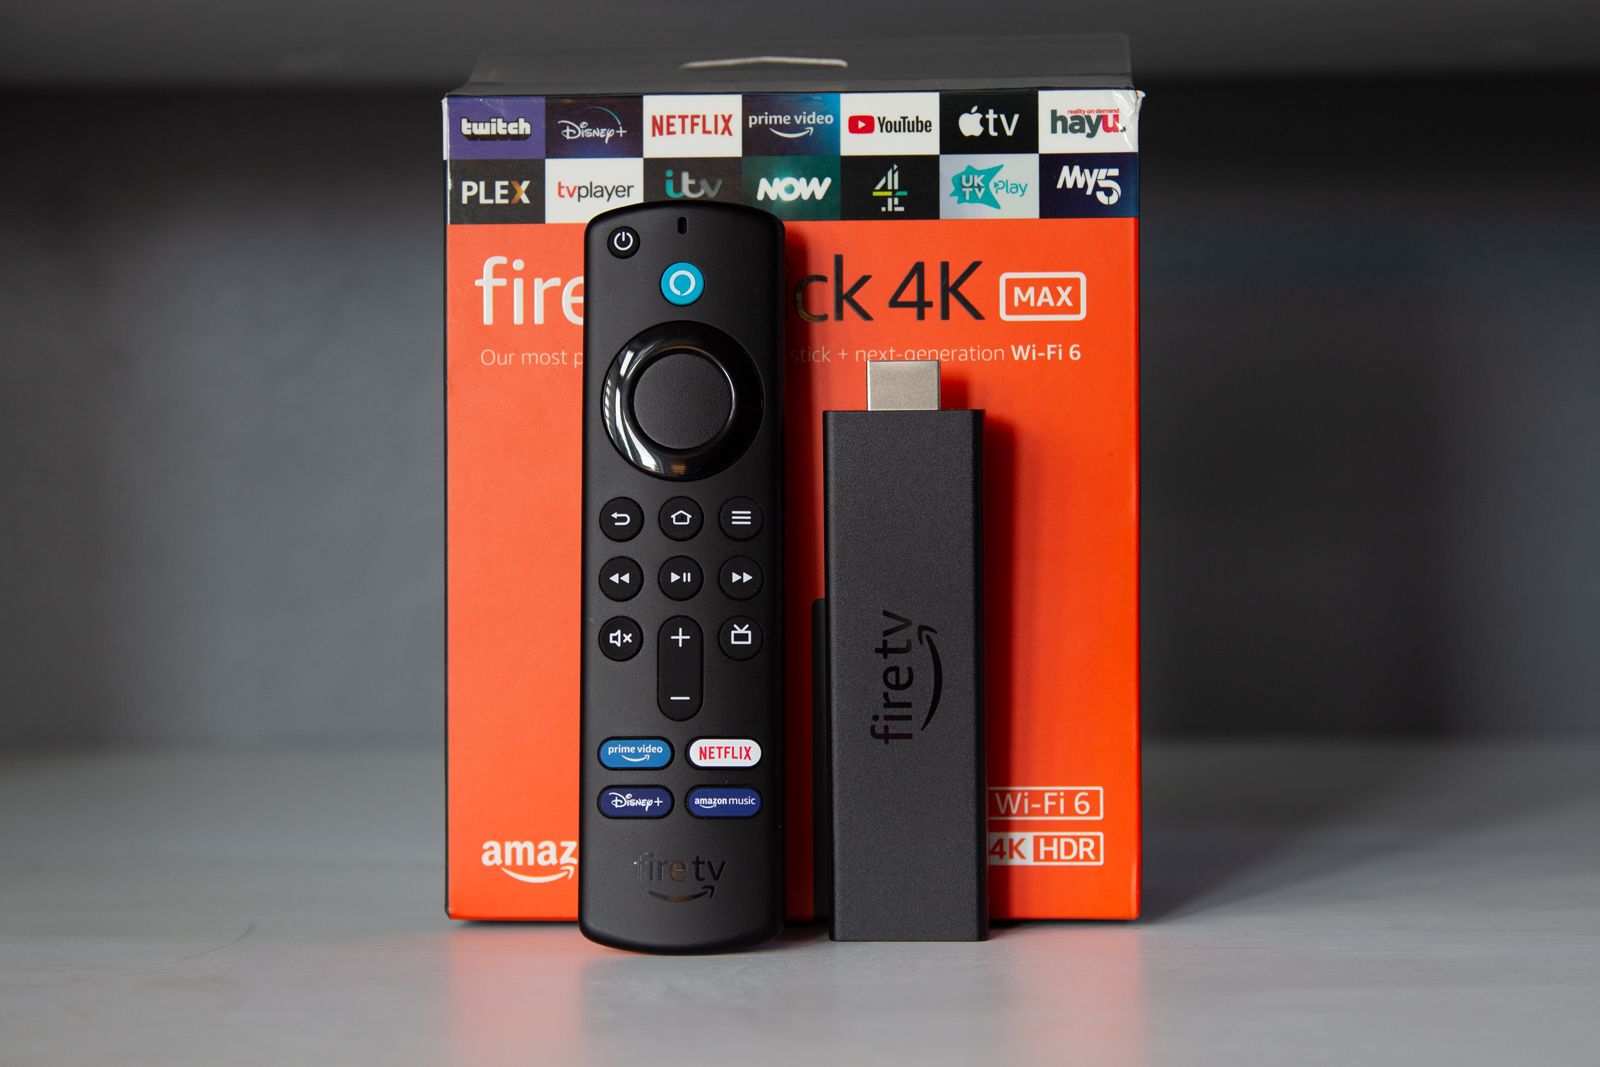 Mega deal alert: Get 54% off Amazon’s Fire TV Stick 4K for Prime Day